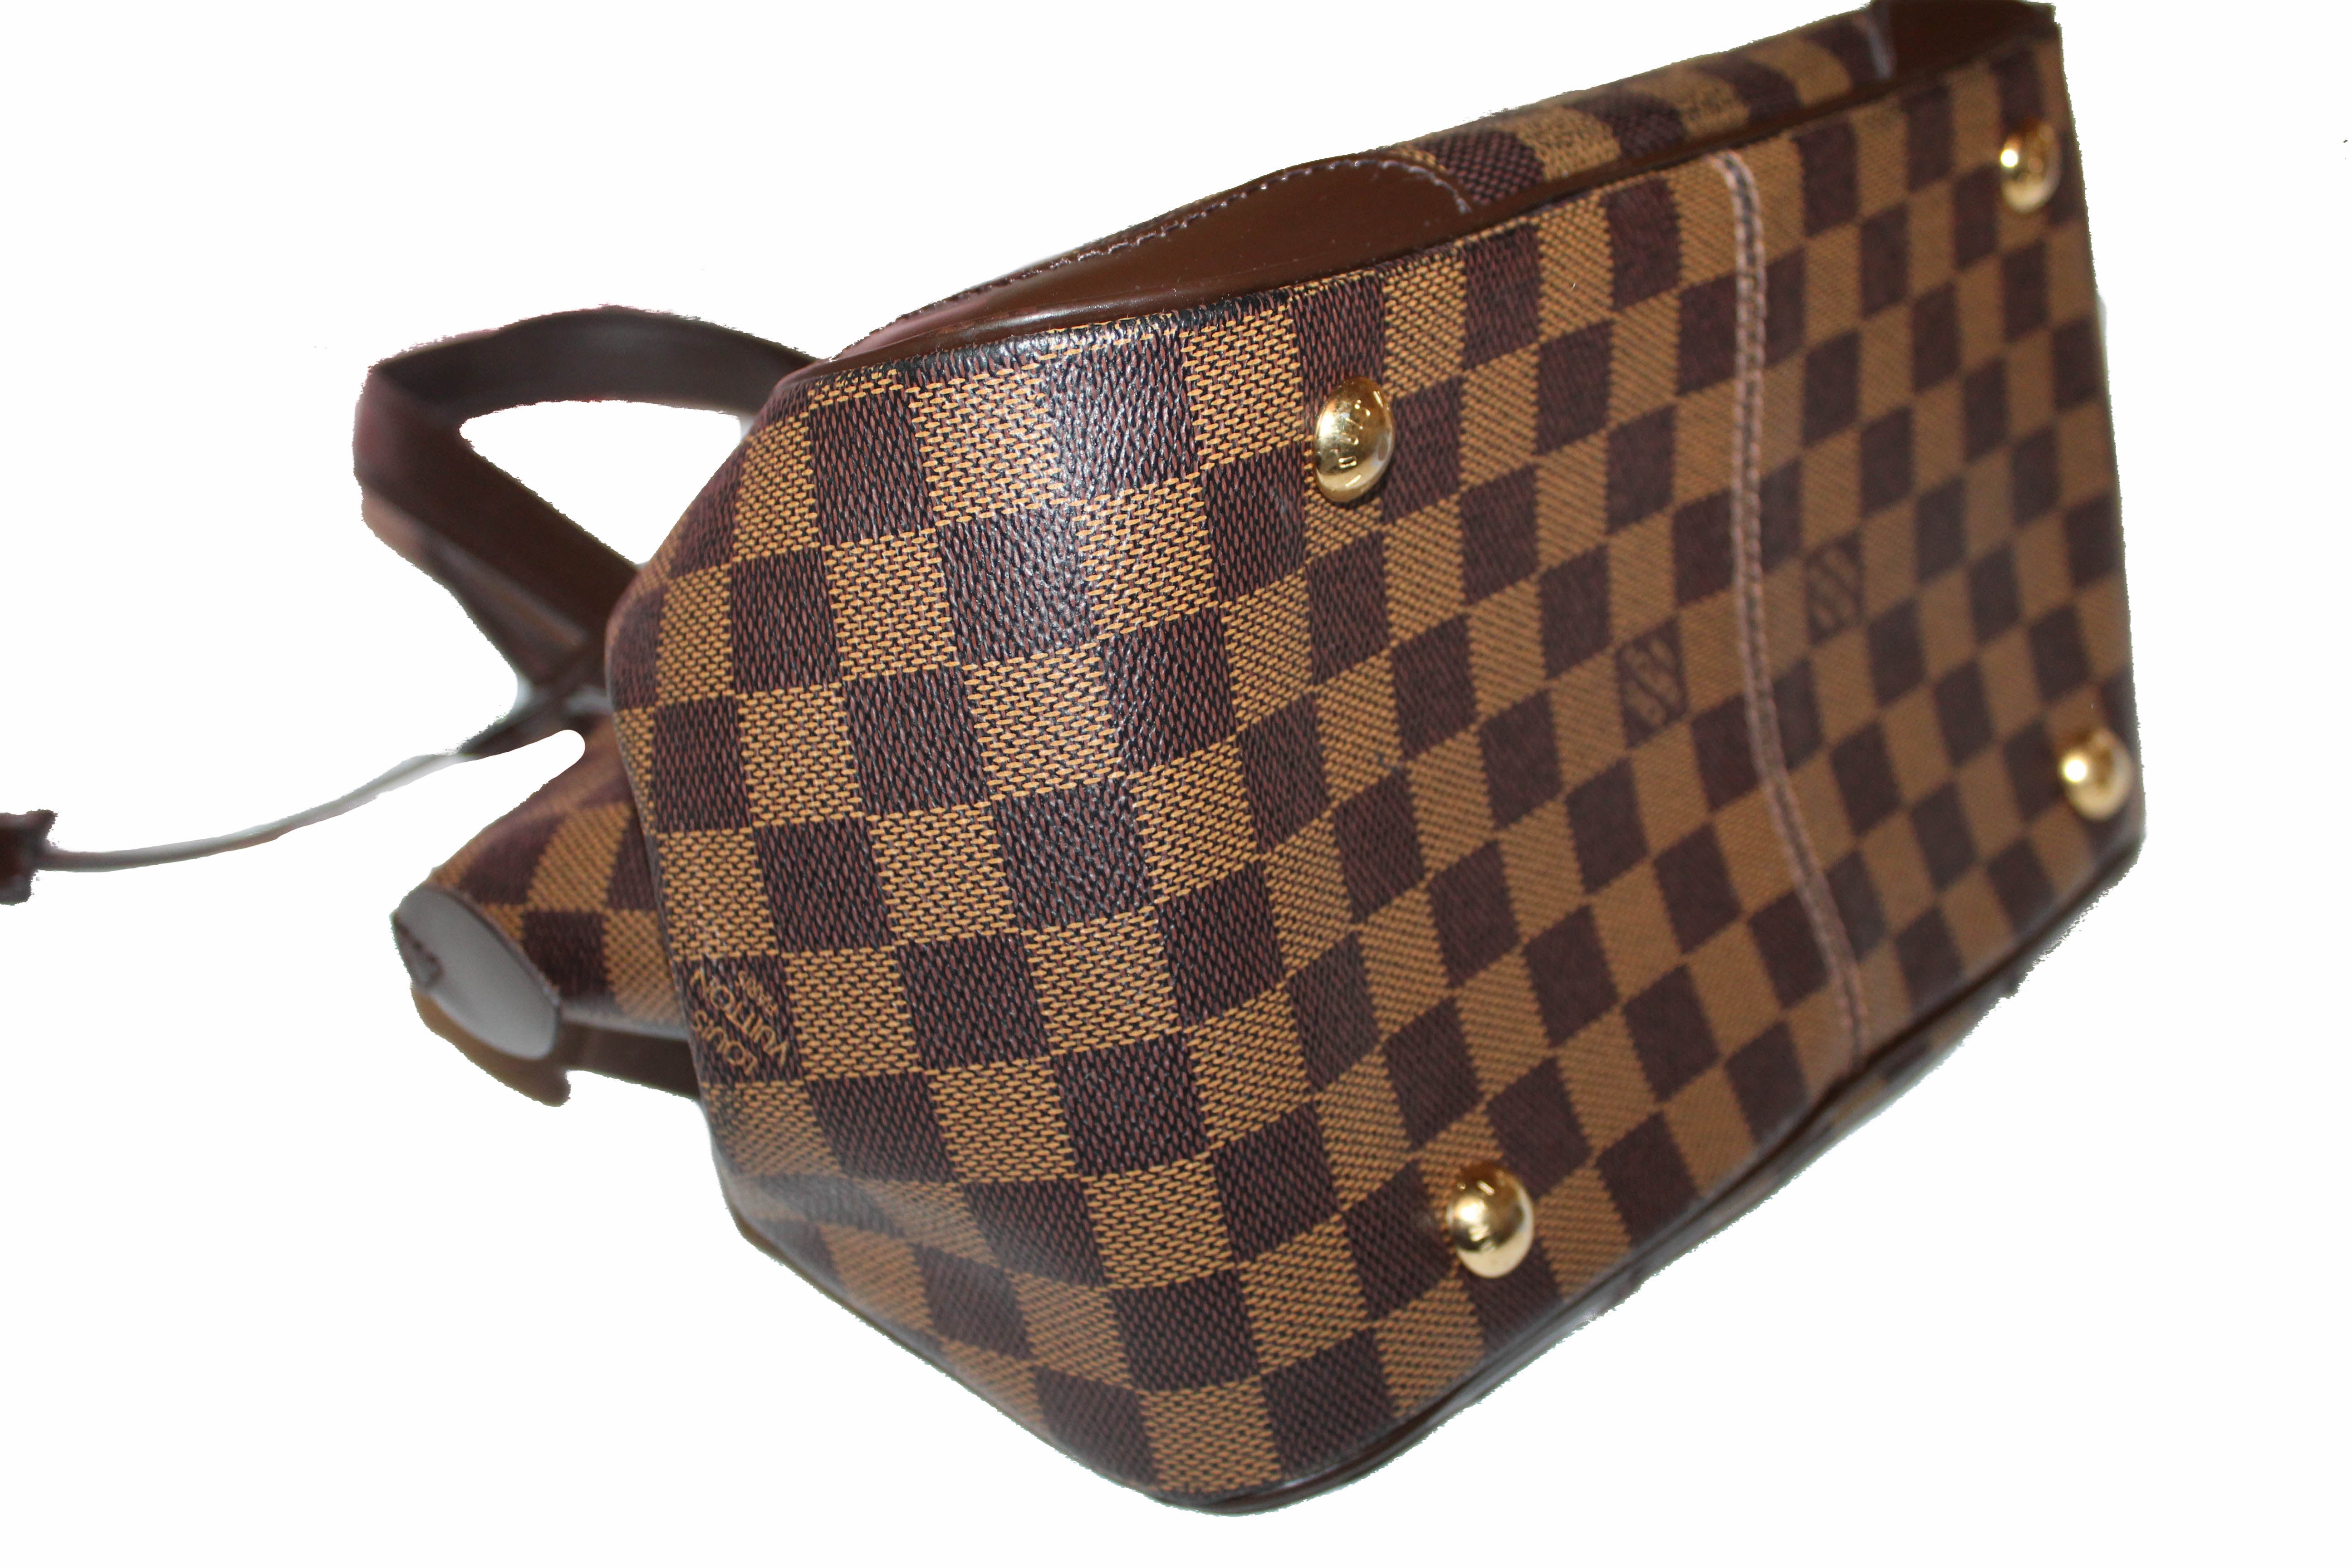 Authentic Louis Vuitton Damier Ebene Verona PM Handbag – Paris